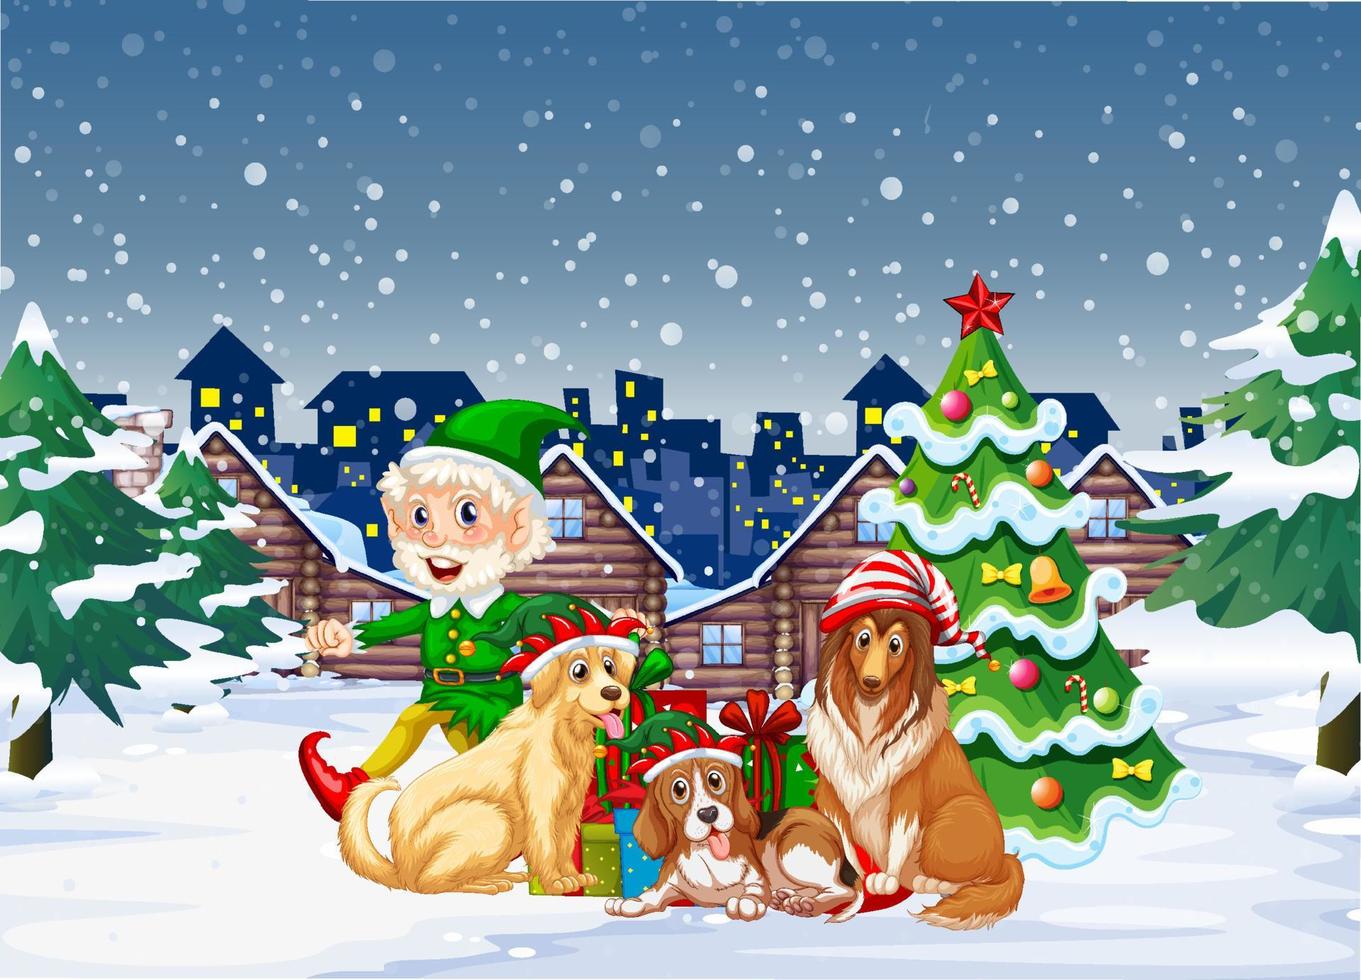 cena de noite de neve com personagens de desenhos animados de natal vetor